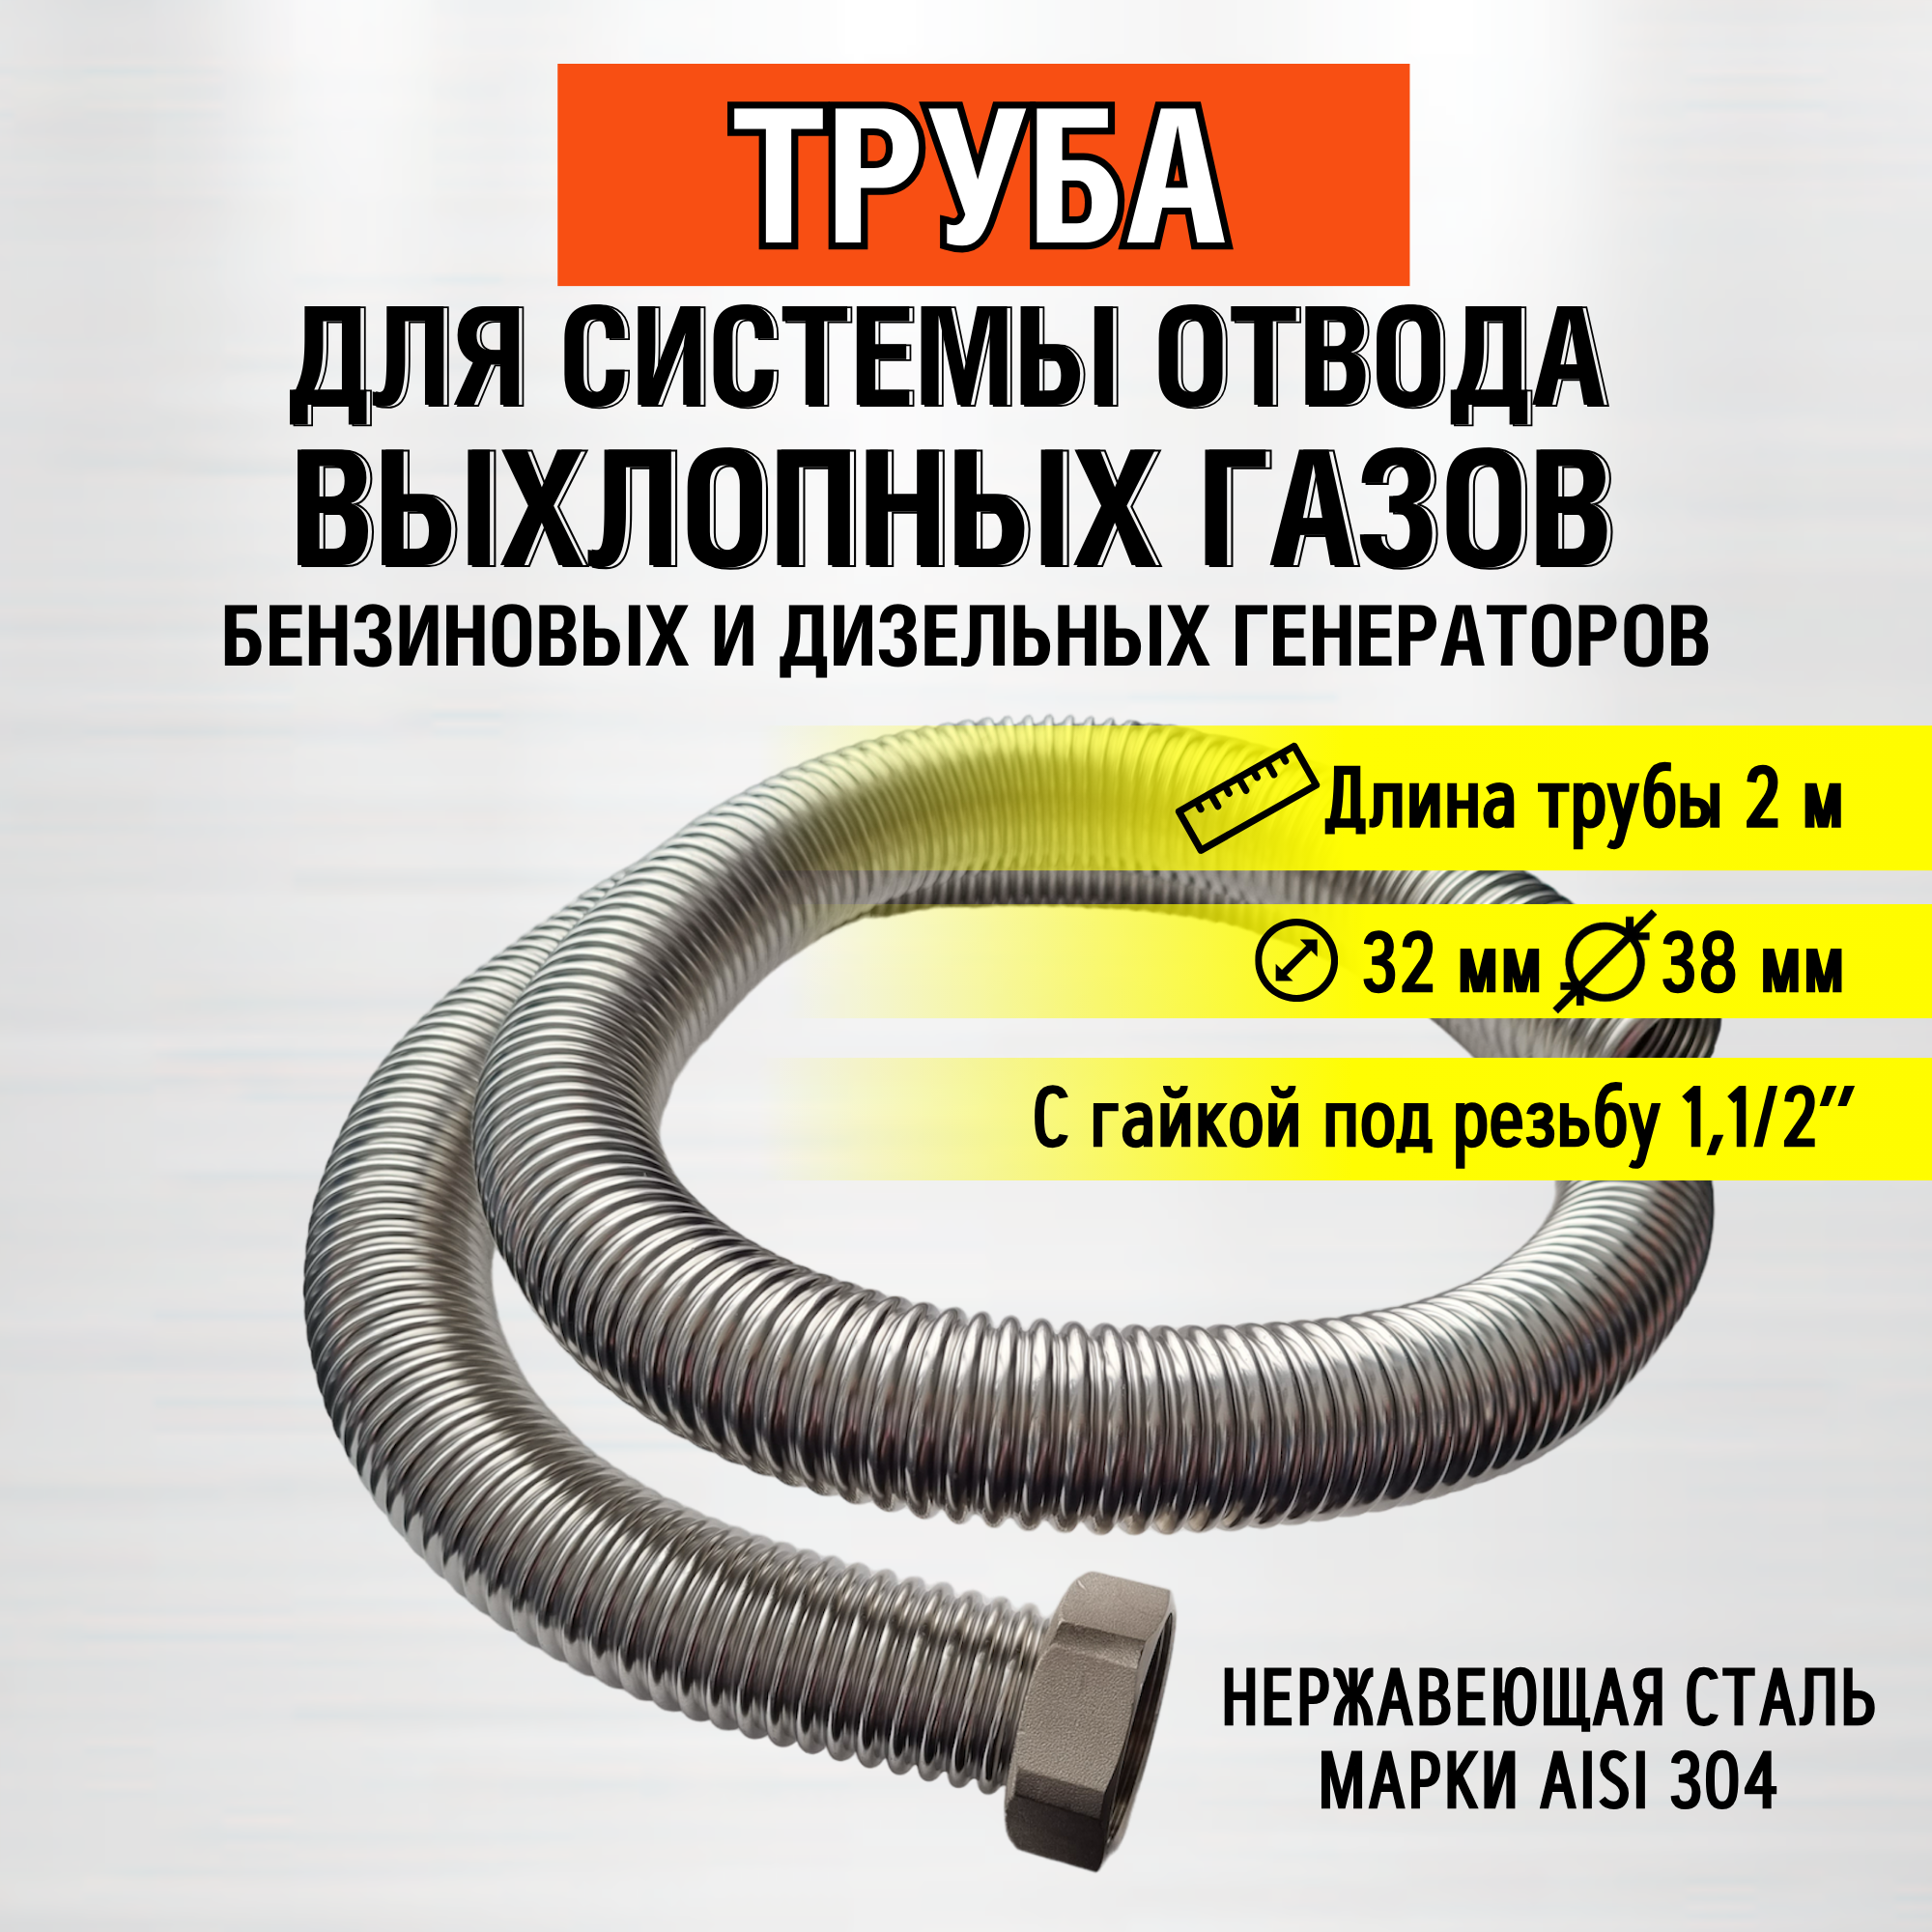 Труба 2м (гайка 1,1/2") Труба отвода выхлопных газов